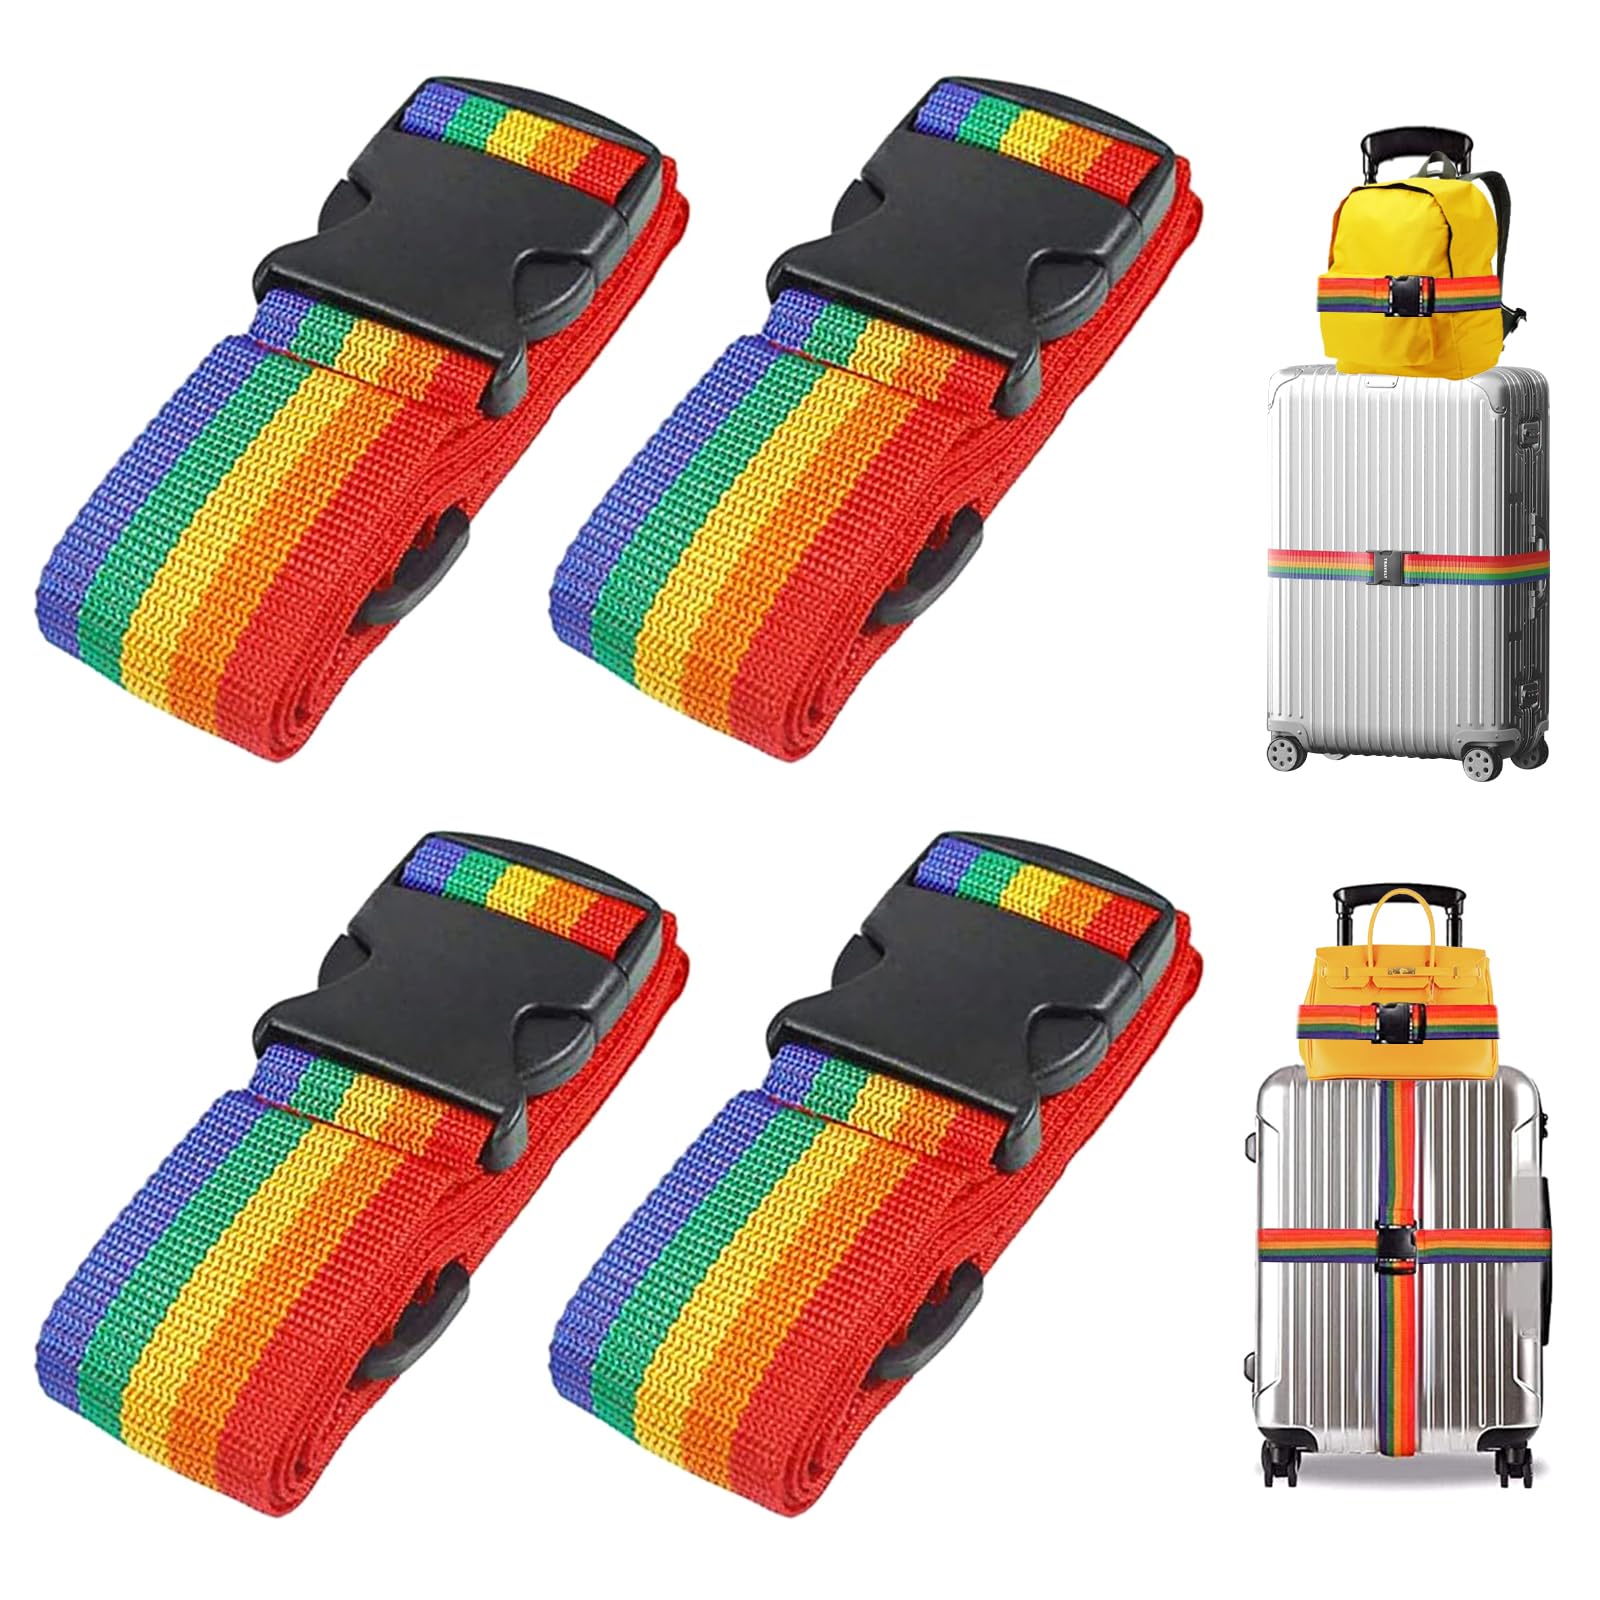 4 Stück Koffergurt Kofferband Set, kofferband Gurt Bunt, Kofferband Einstellbare 100-190cm, Verstellbar Koffergurt für Reisegepäck erkennen Gepäck Reisetasche Koffer（Schillernd） von YHNMMNO